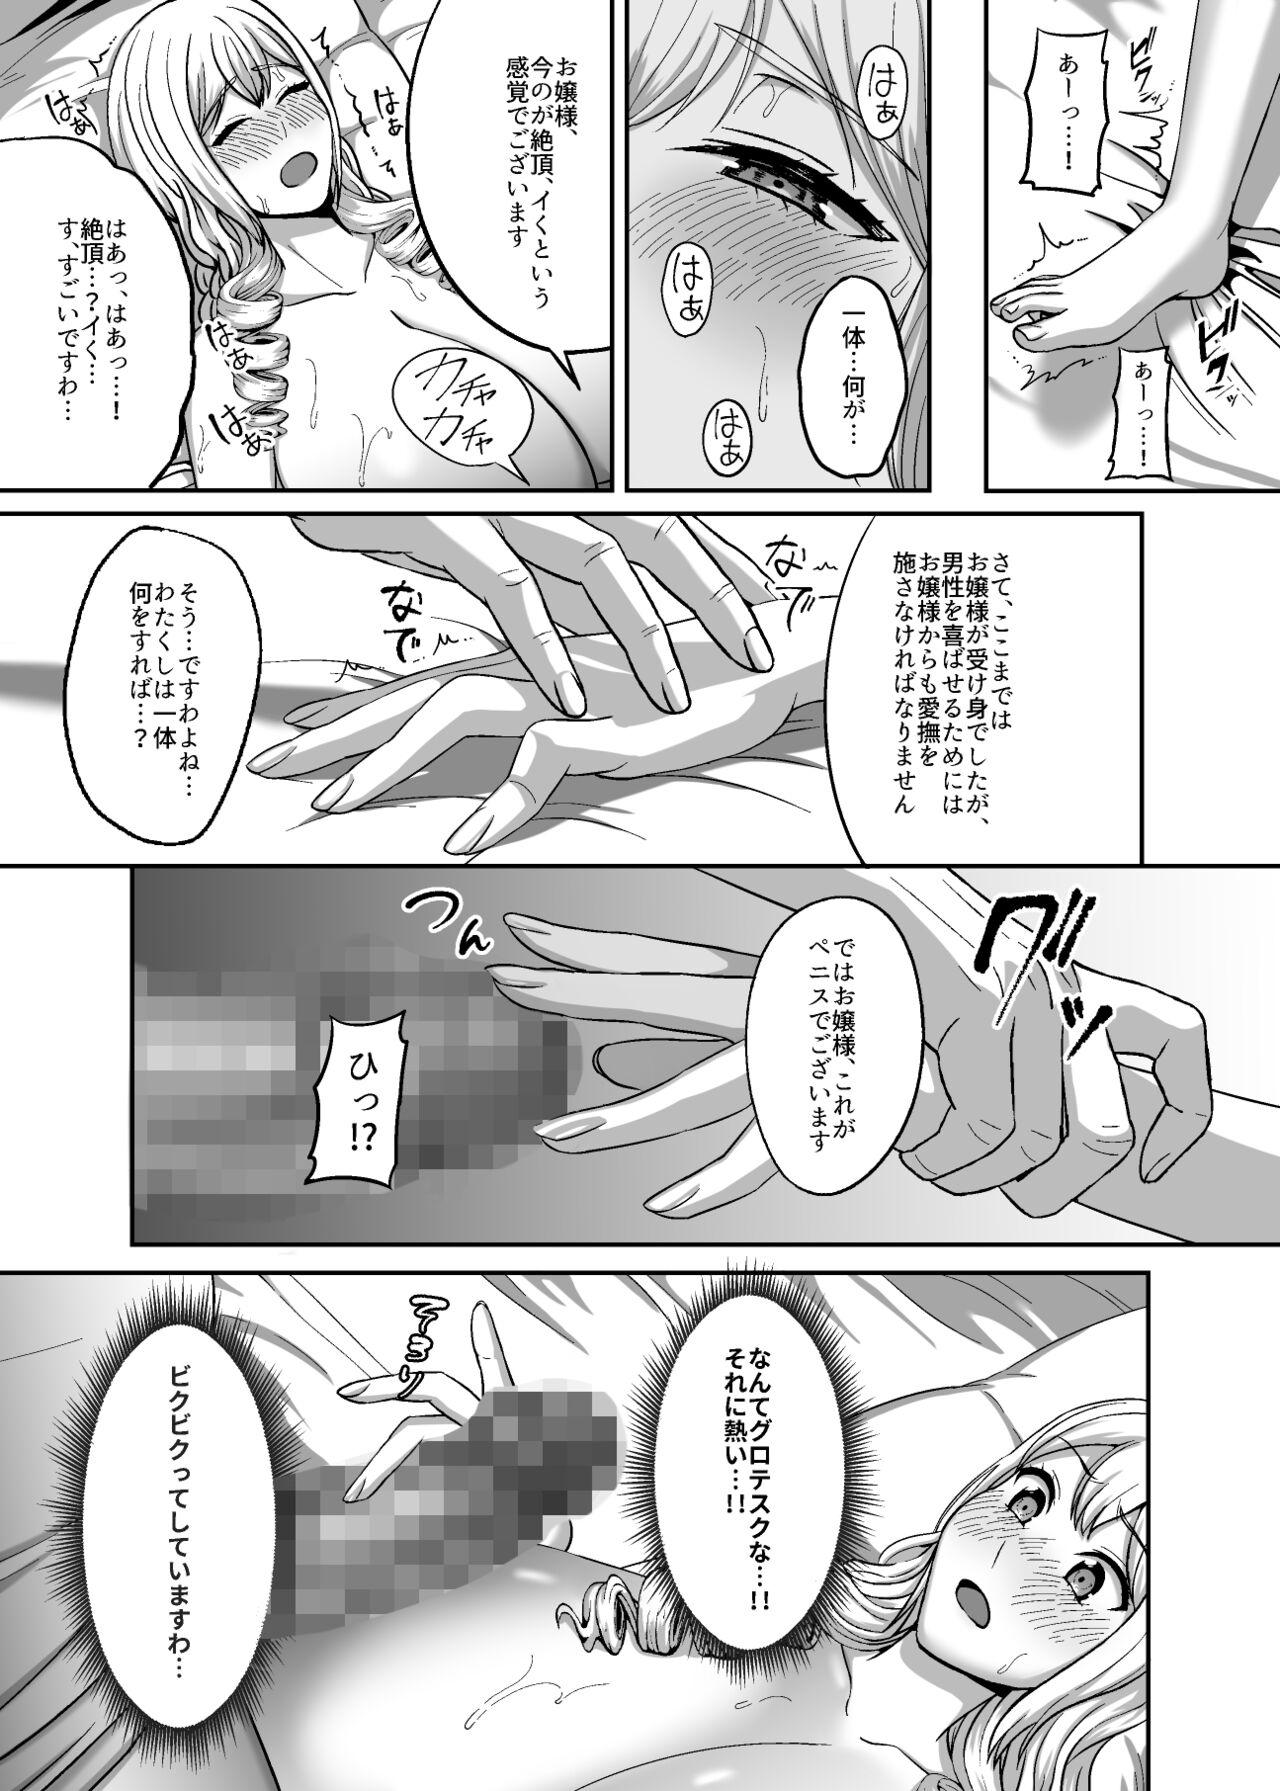 Viet Ichiryuu no Lady wa Seikoui no Gijutsu mo Ichiryuu denakute wa - Original Trans - Page 10